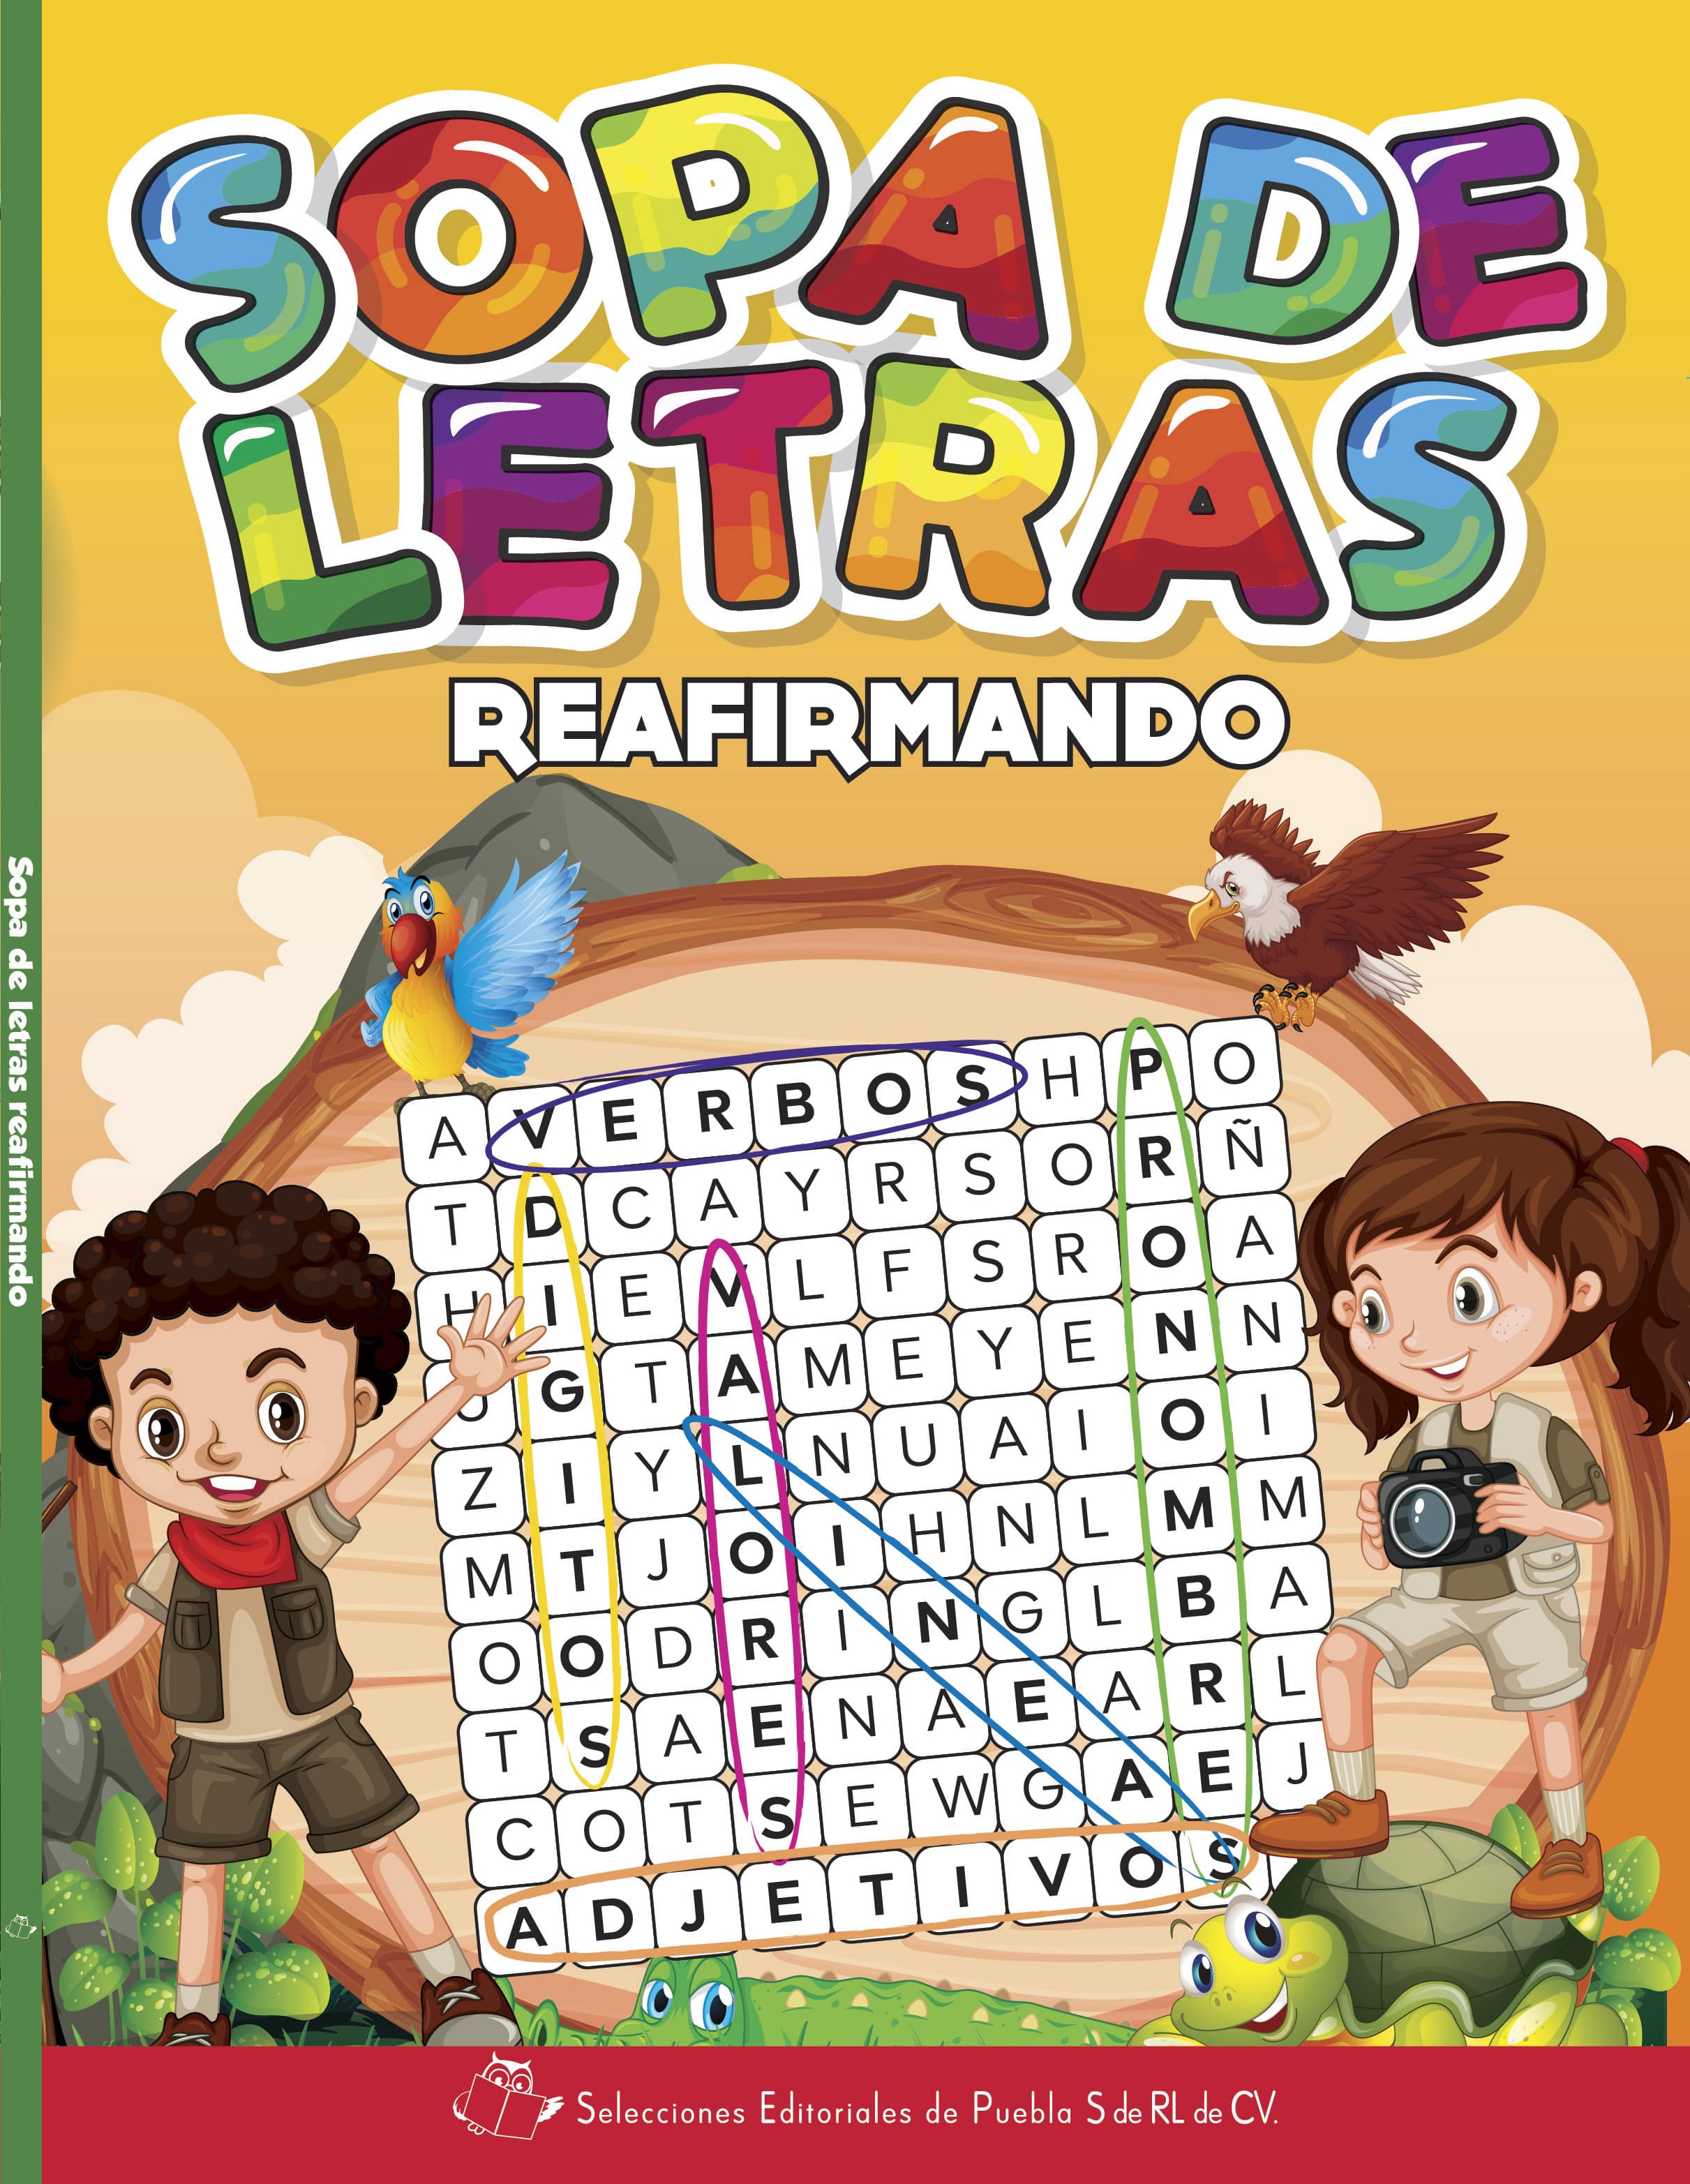 Portada libro infantil Sopa de Letras Reafirmando, libros preescolar, actividaes preescolar, articulos pedagógicos preescolar, educación preescolar